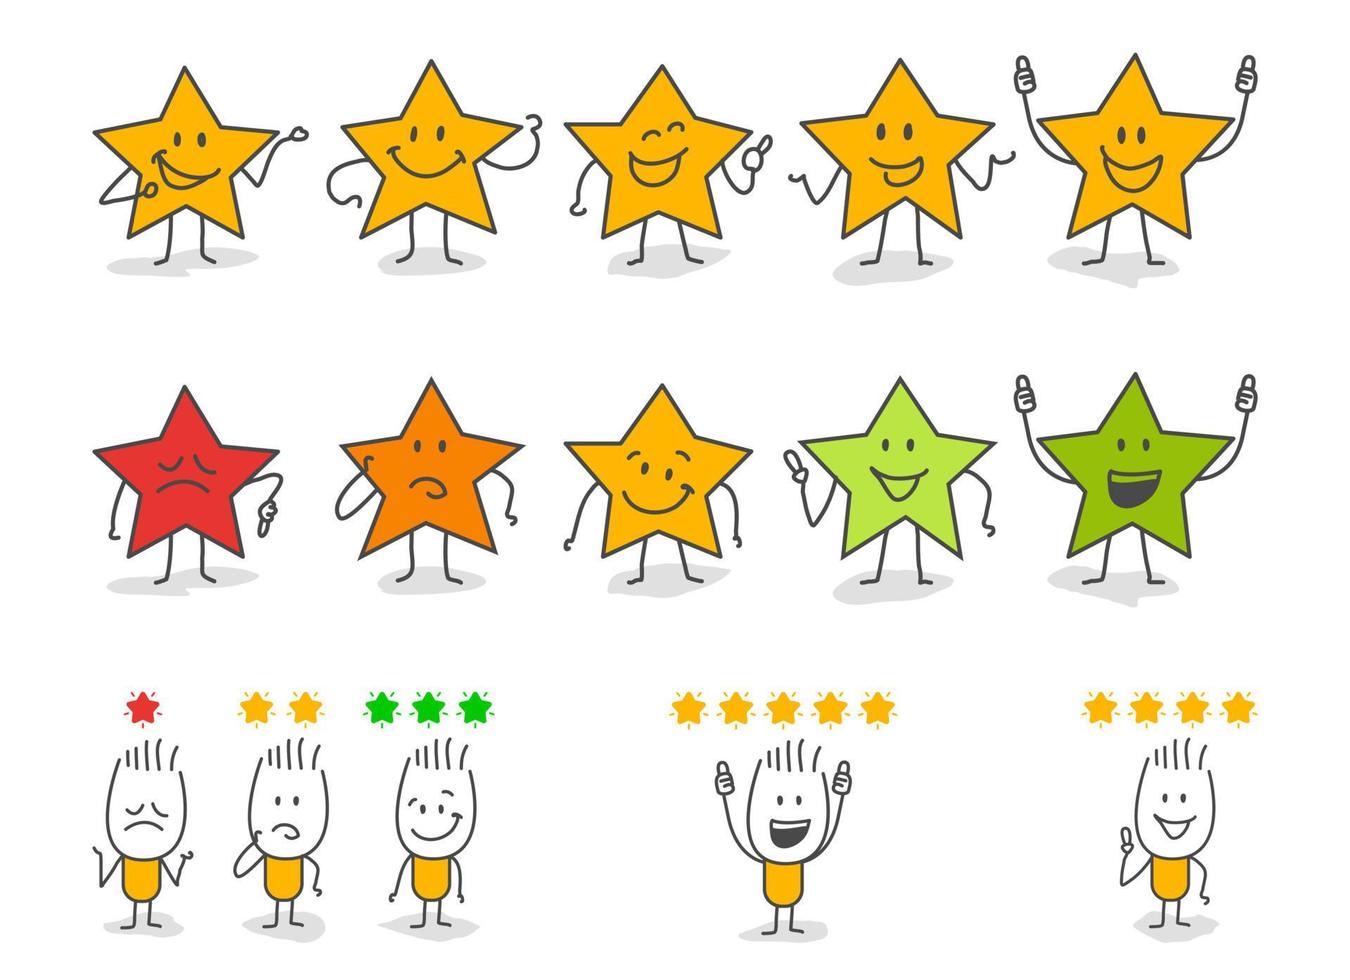 stok figuren geven recensie beoordeling en feedback. vector